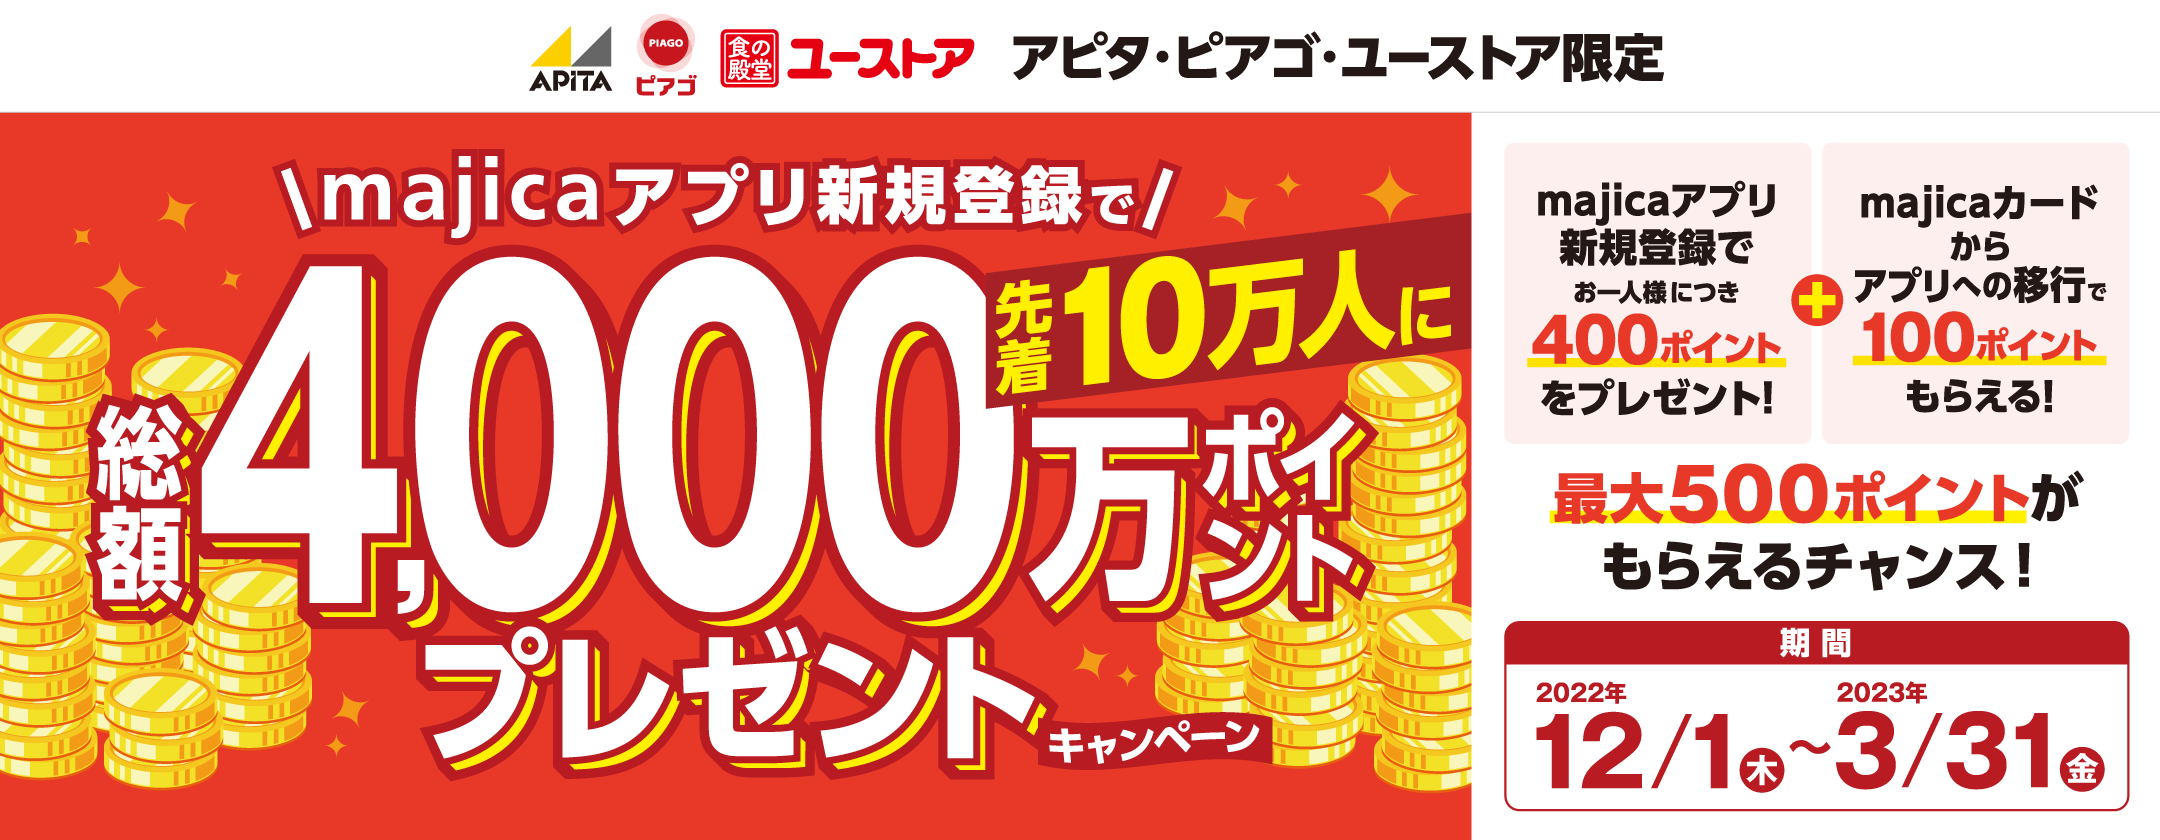 アピタ・ピアゴ・ユーストア限定 majicaアプリ新規登録400ポイントプレゼントキャンペーン